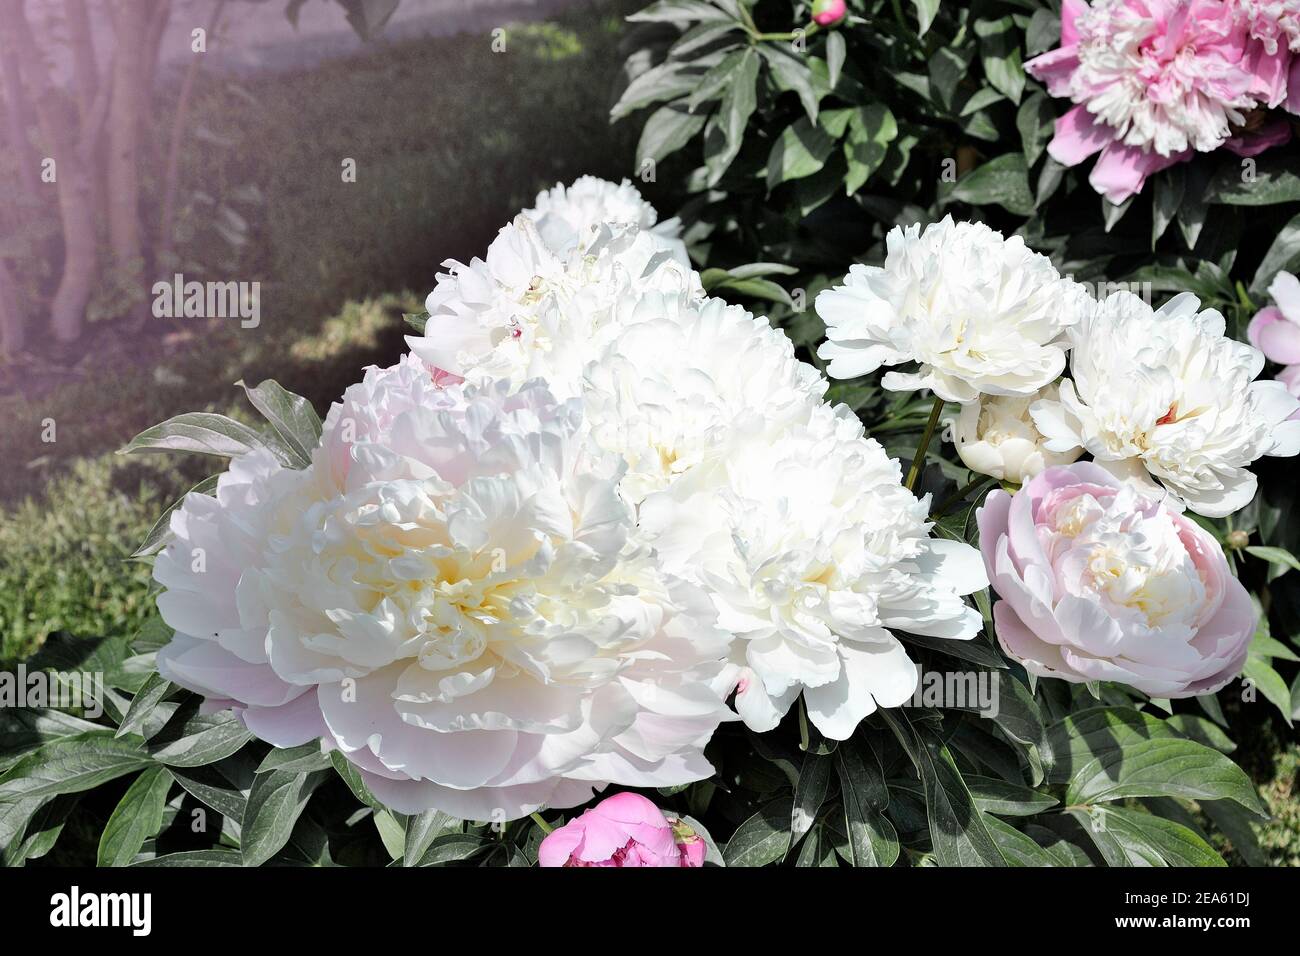 Weiße und rosa Pfingstrosen Sträucher in voller Blüte im Garten. Sanfte Pfingstrosen und grüne Blätter. Weicher Fokus, geringer Freiheitsgrad. Blumen im Frühling oder Sommer Stockfoto